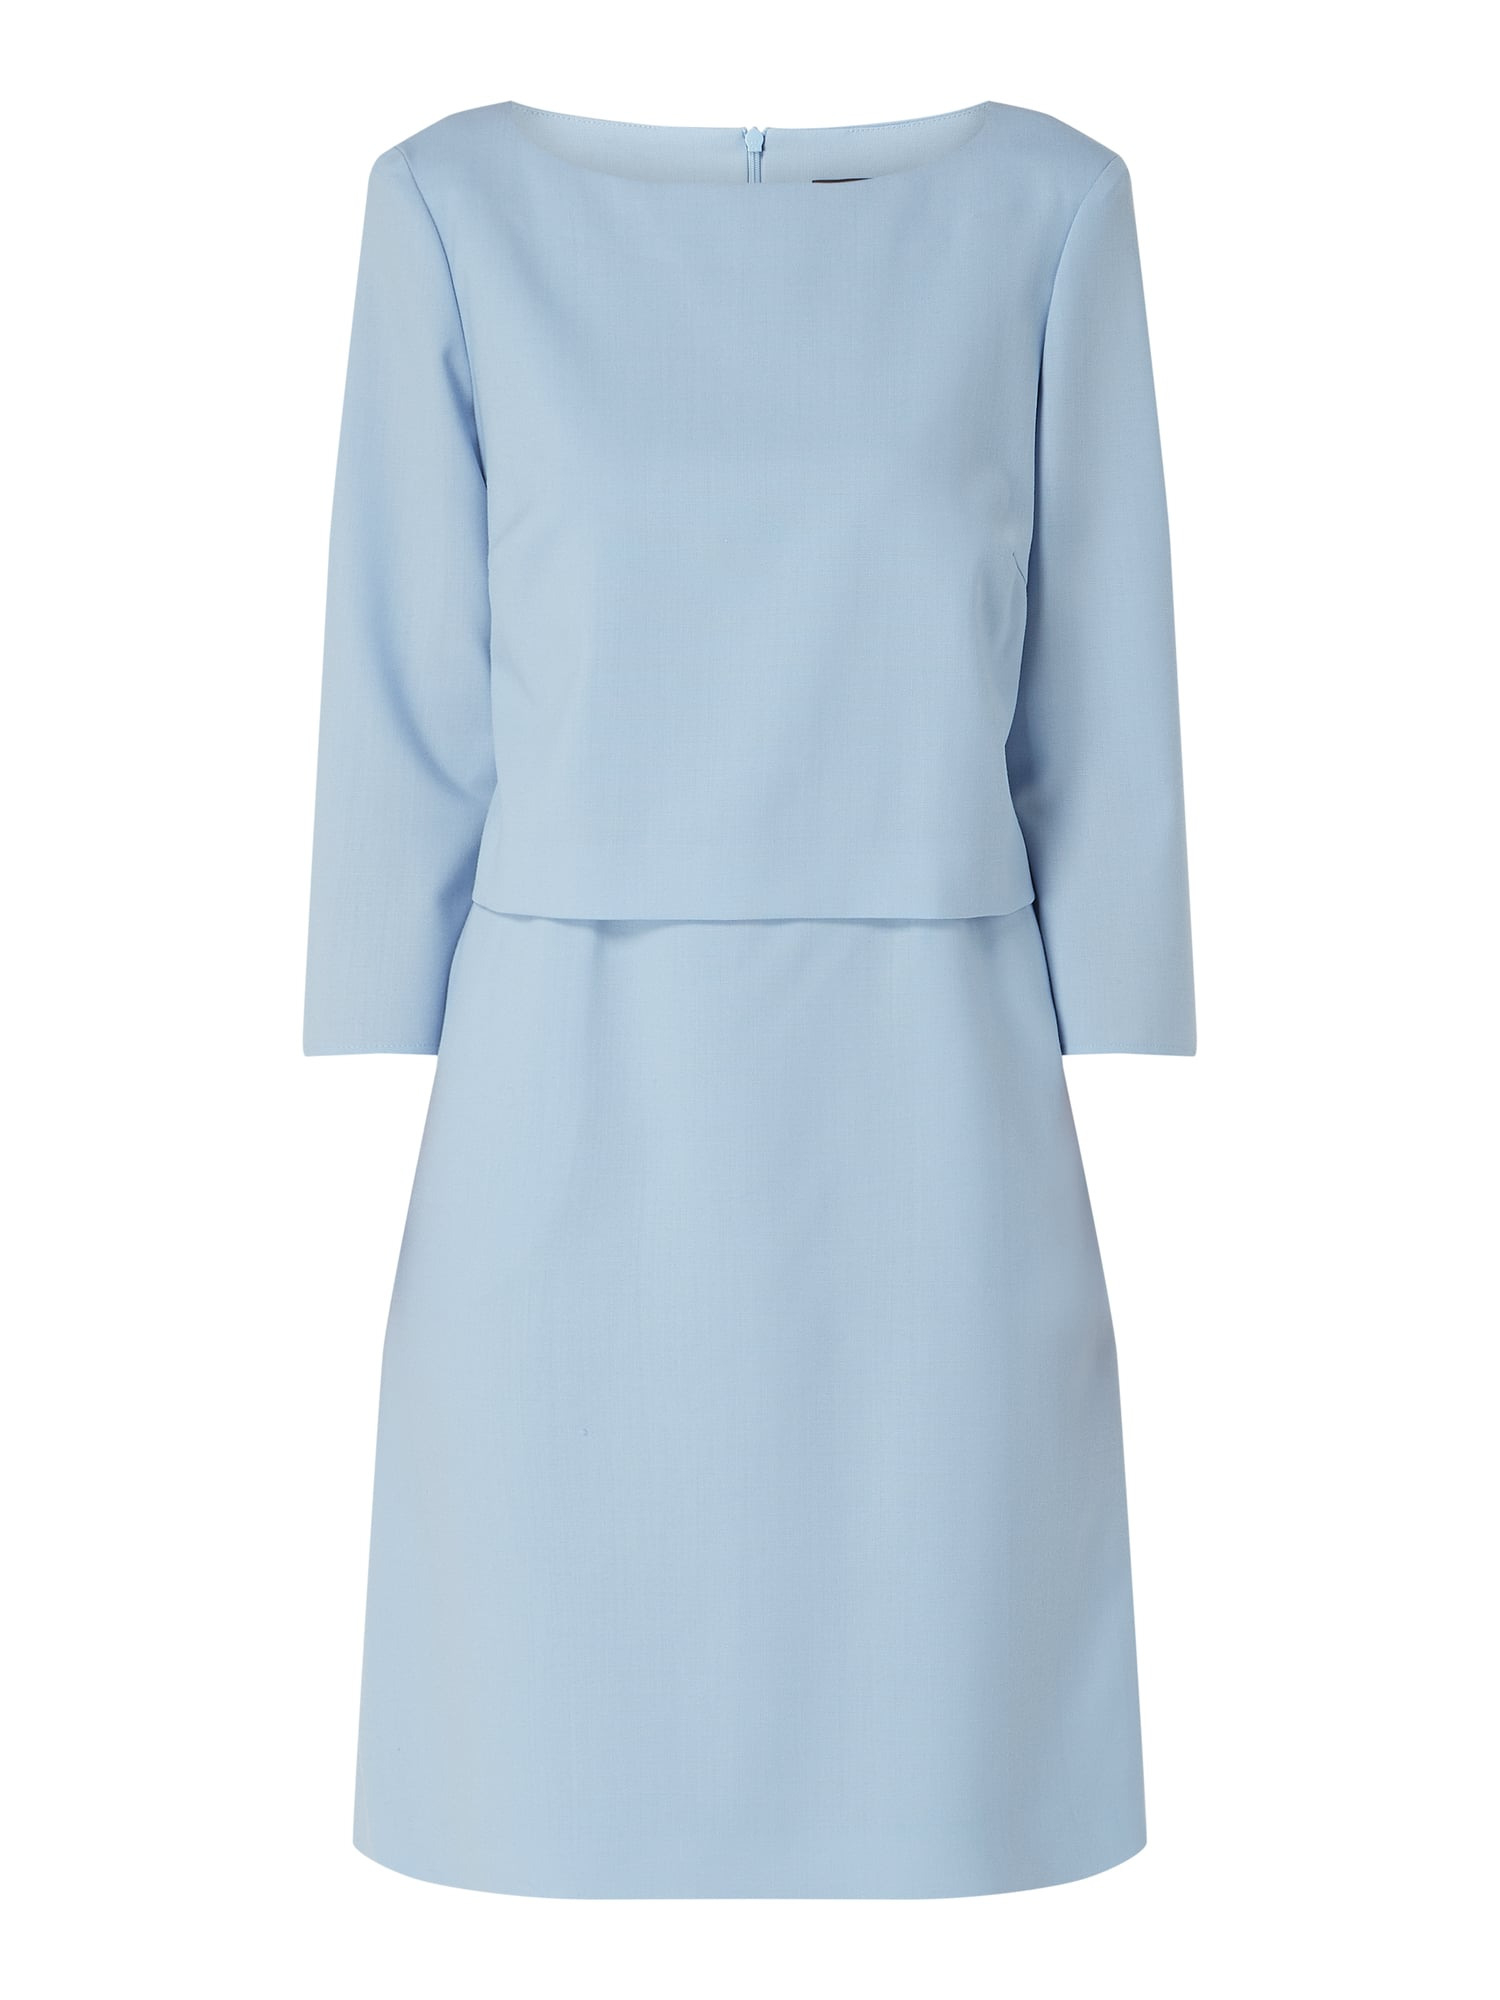 Windsor Kleid Aus Schurwolle Im 2In1Look In Blau